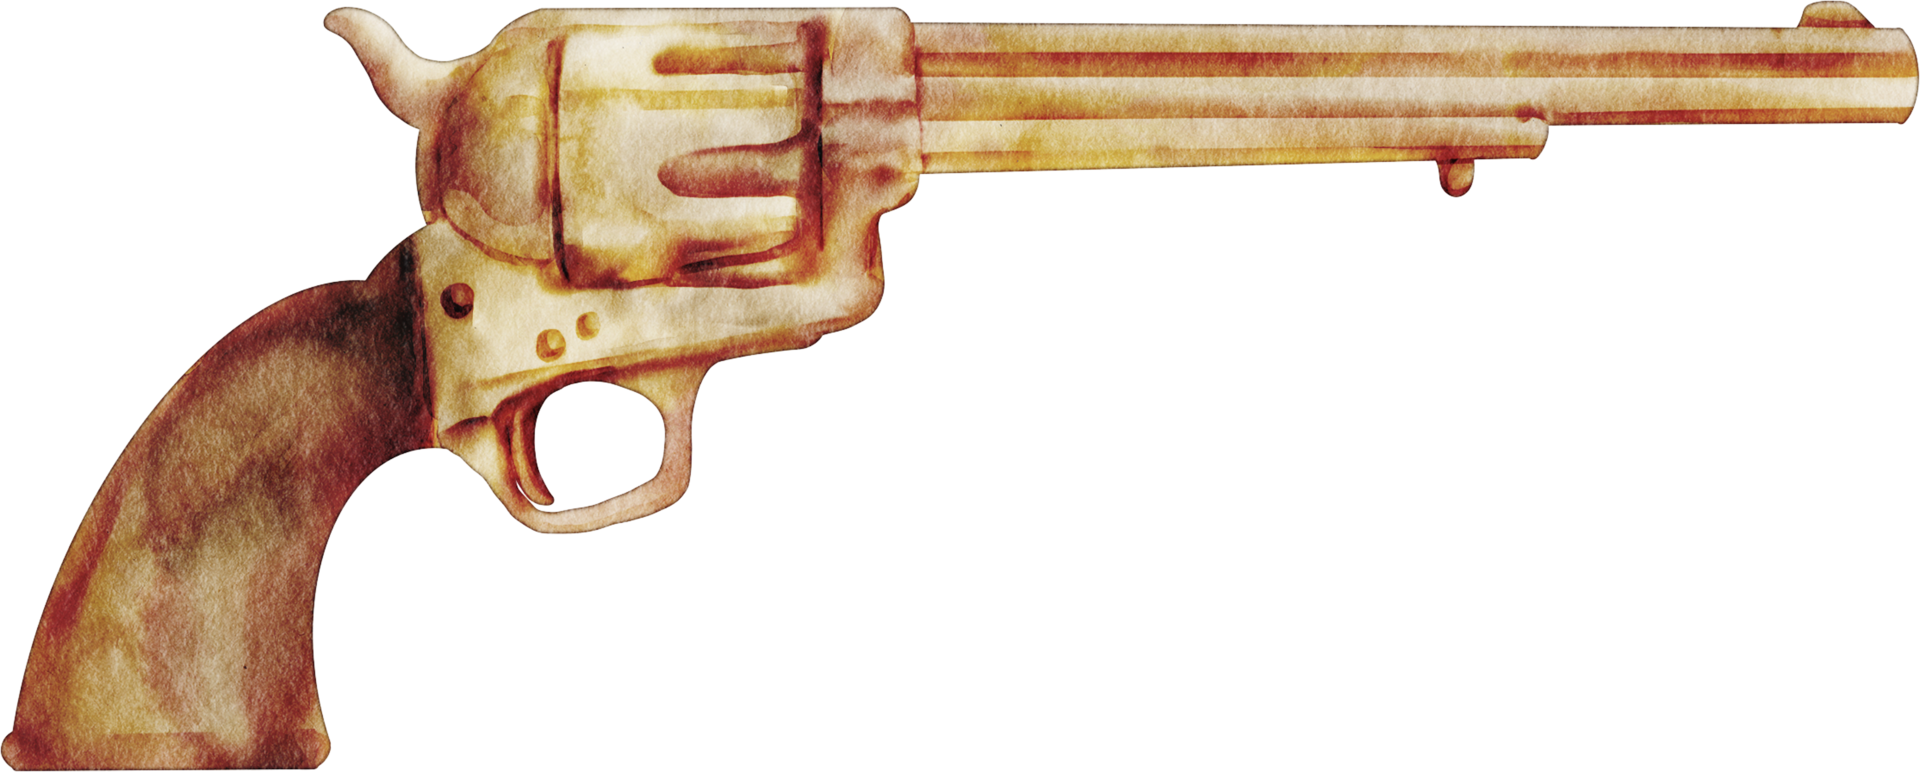 Vaquero Cowboy Revolver - Imagen gratis en Pixabay - Pixabay